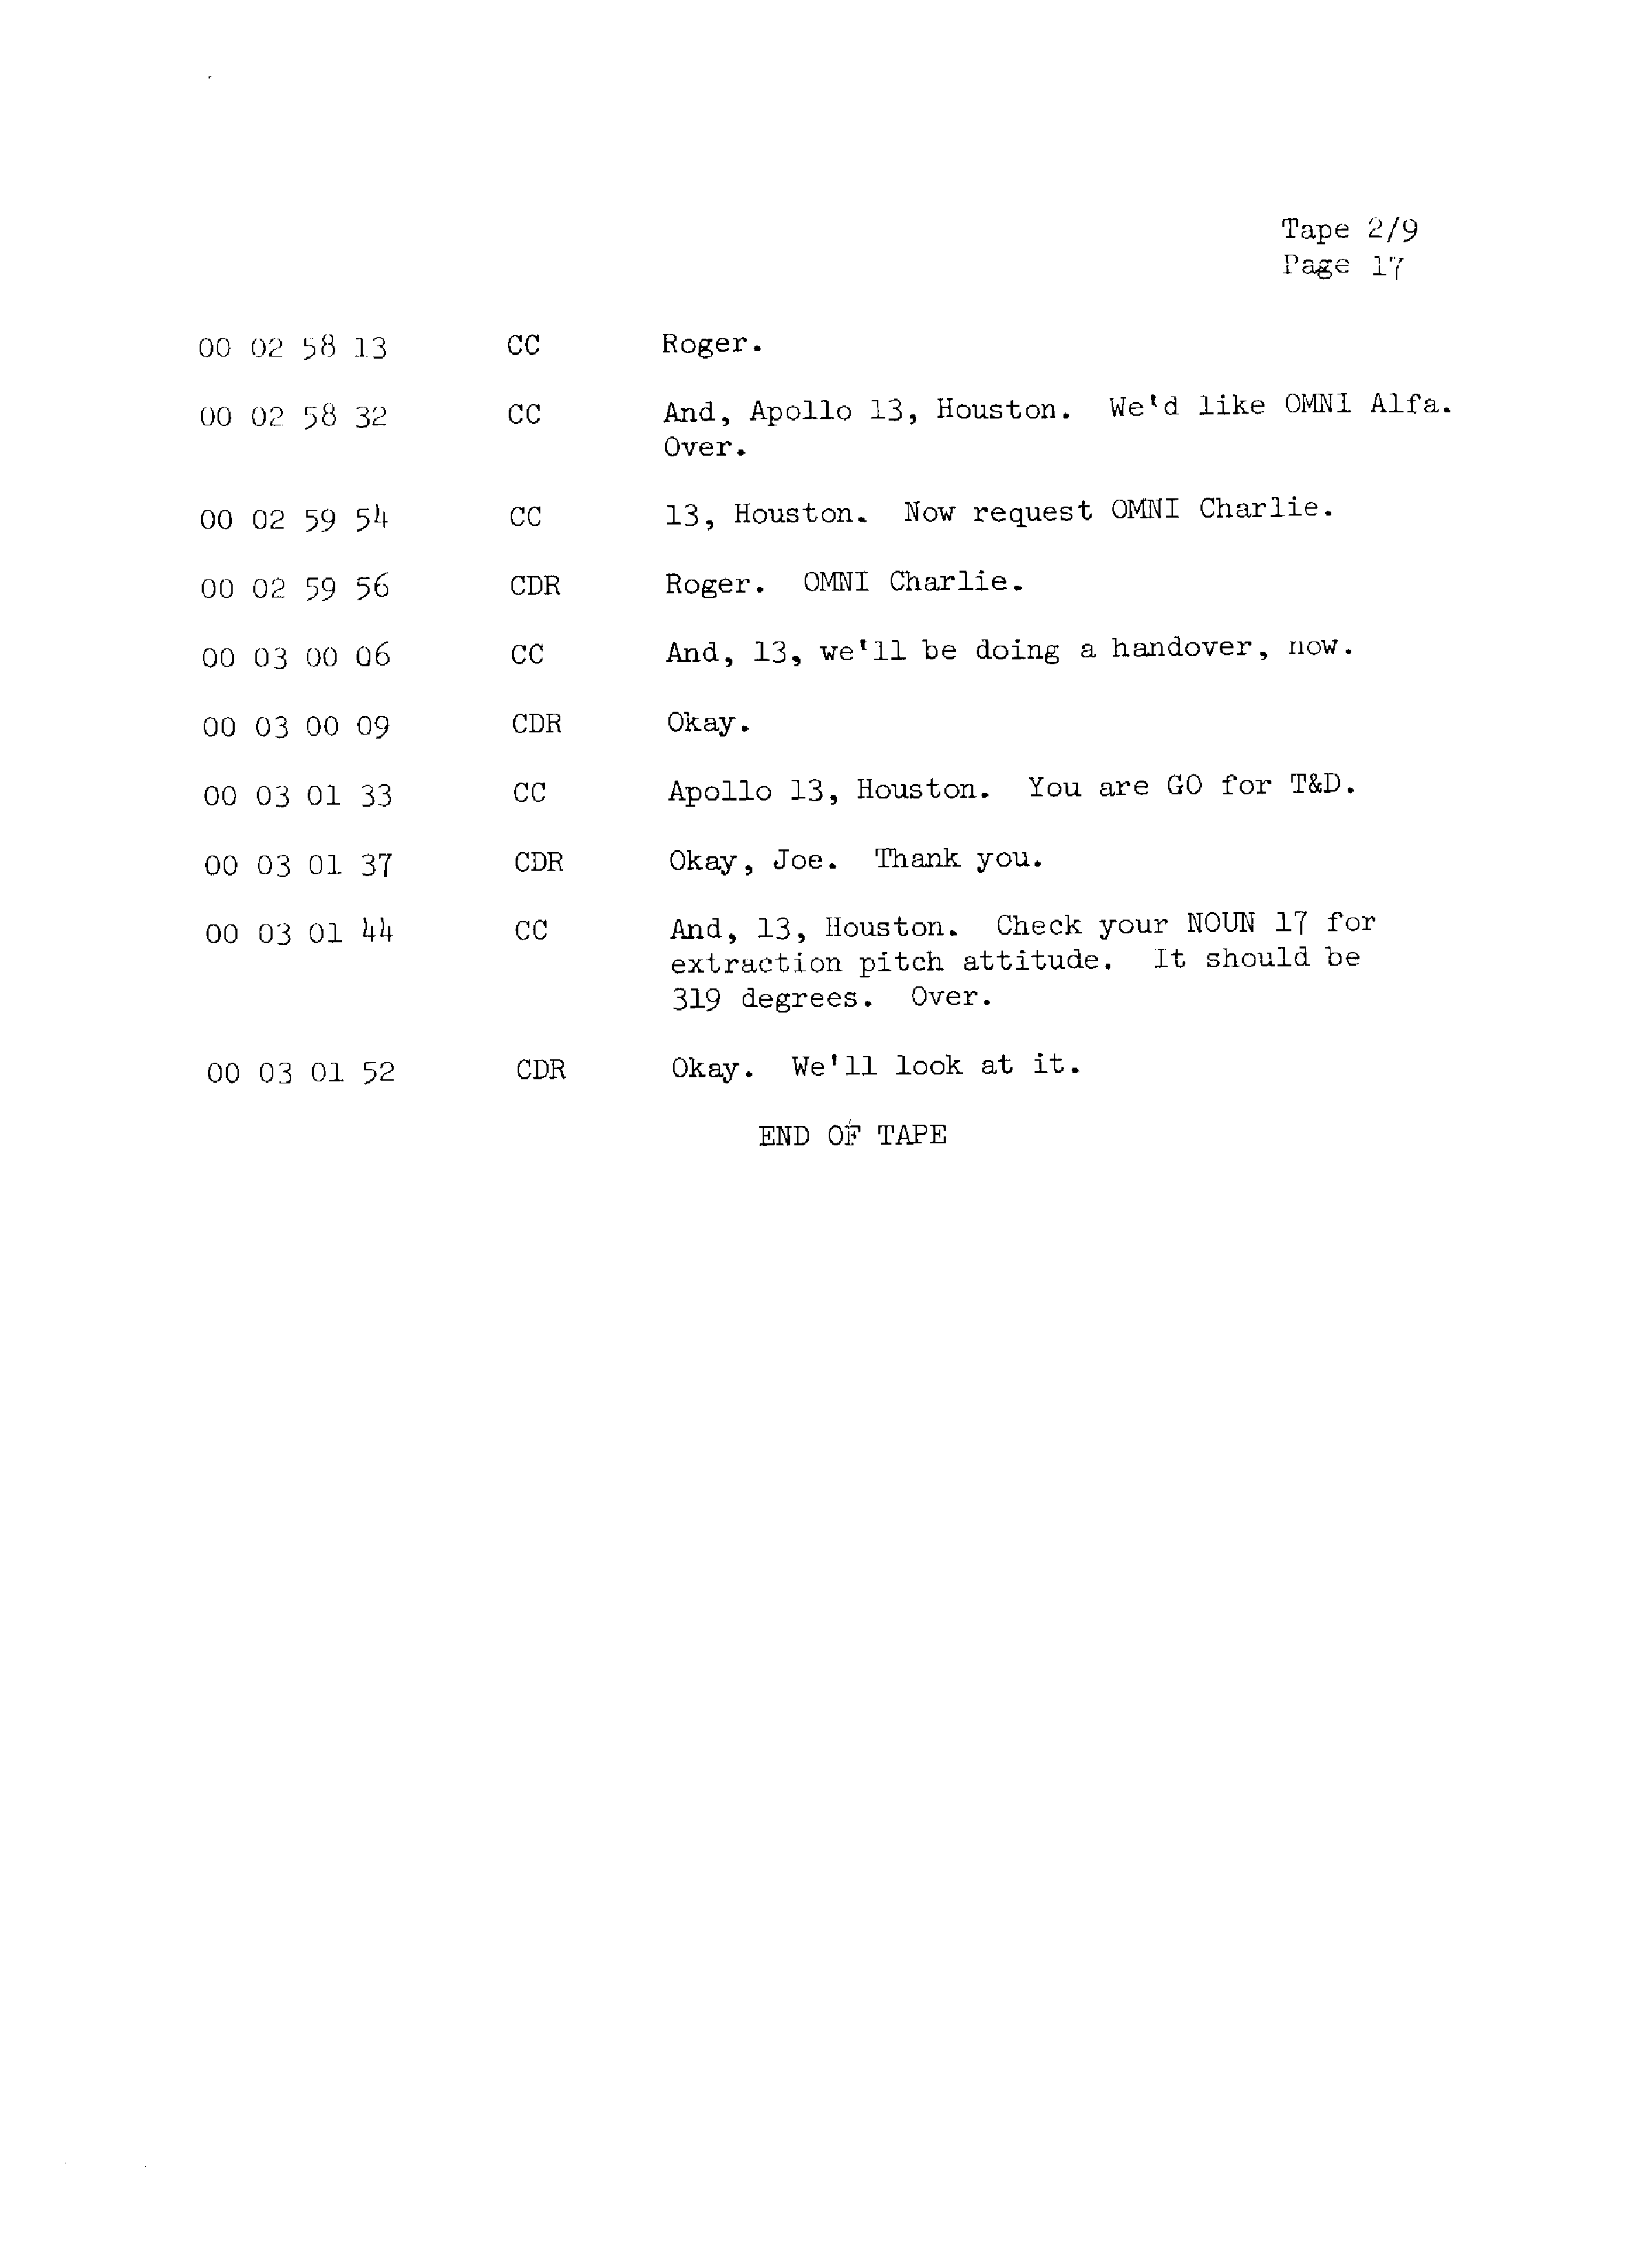 Page 24 of Apollo 13’s original transcript